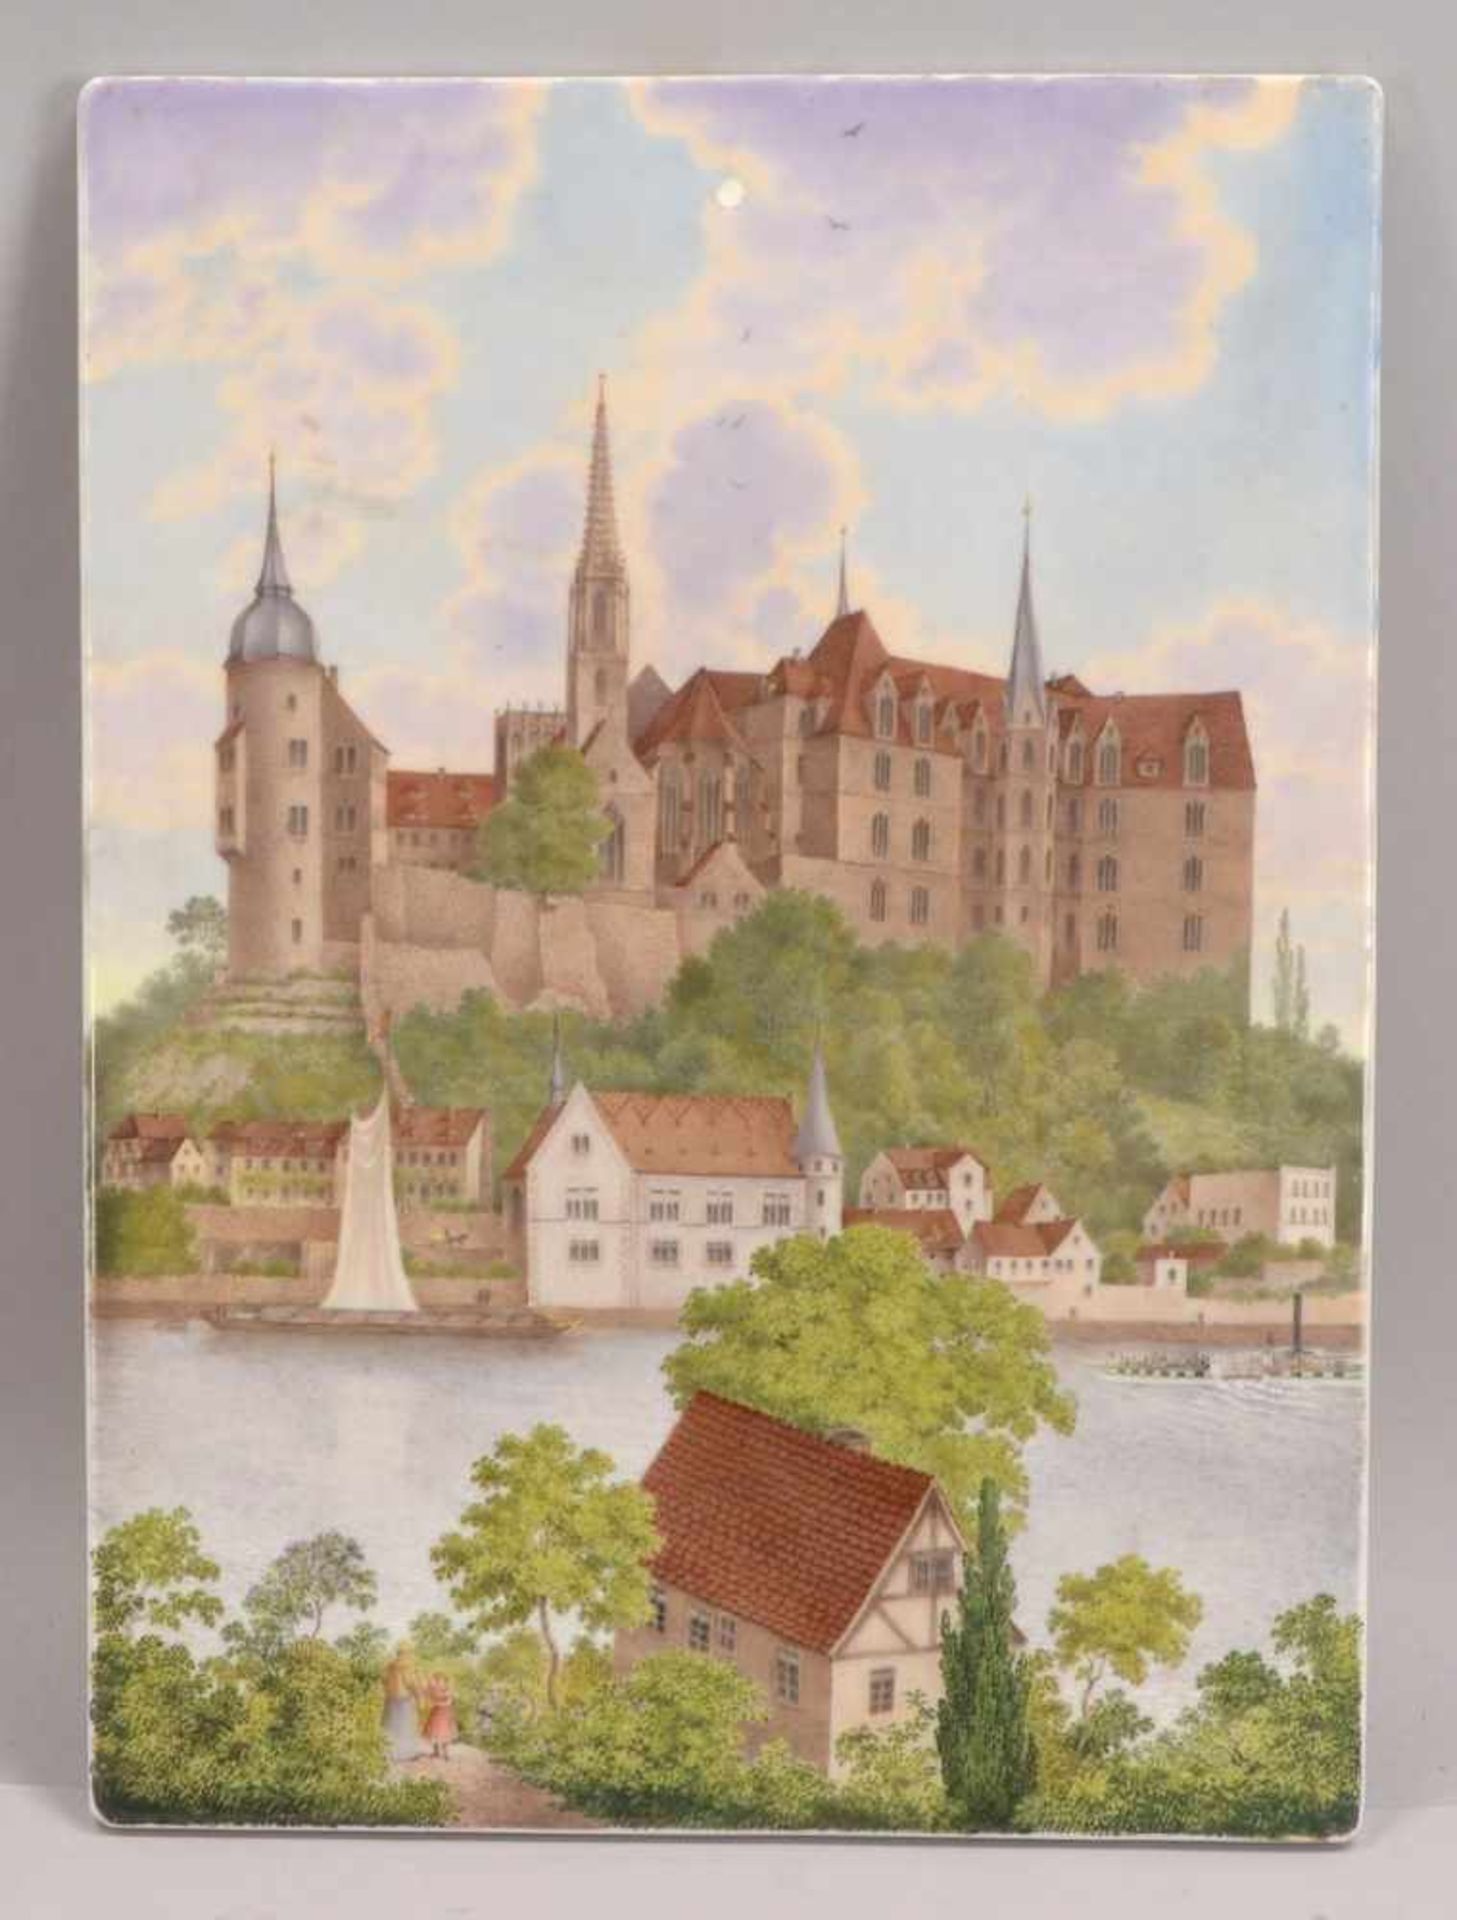 KPM (Zeptermarke), alte Porzellan-Bildplatte, mit allerfeinster Porzellanbild-Malerei, Motiv '